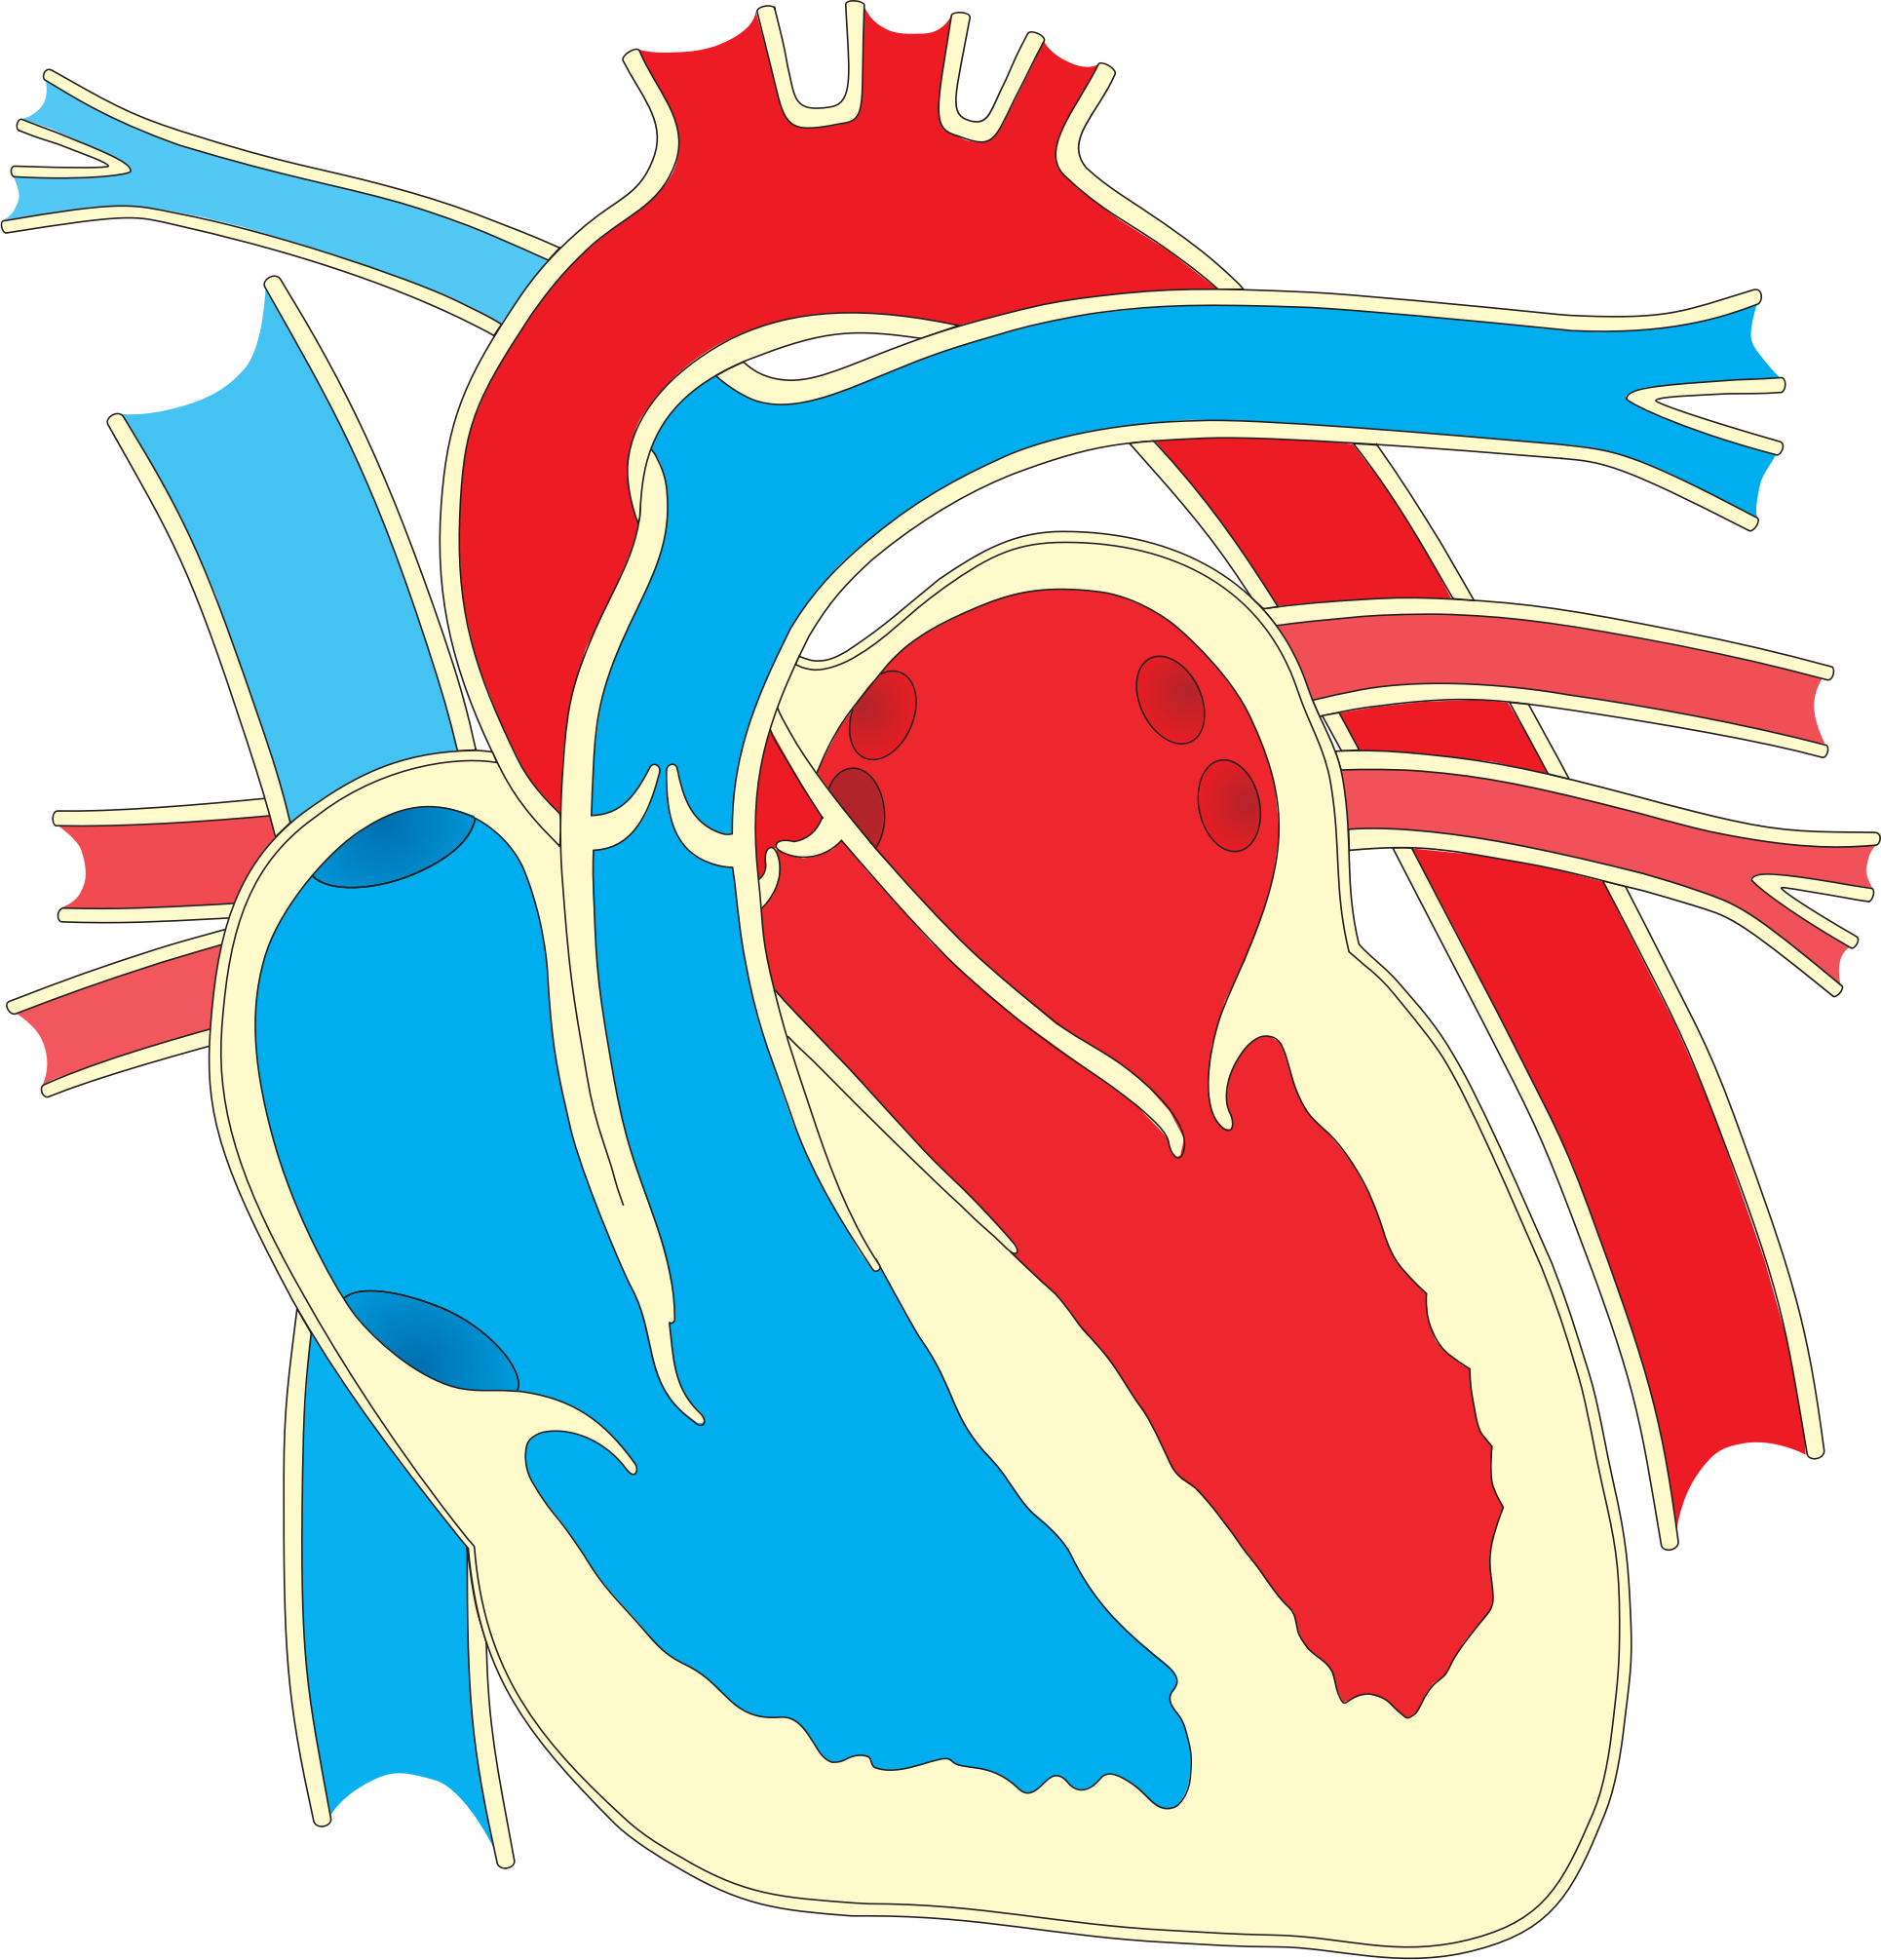 Big Image - Heart Diagram (1930x2011)